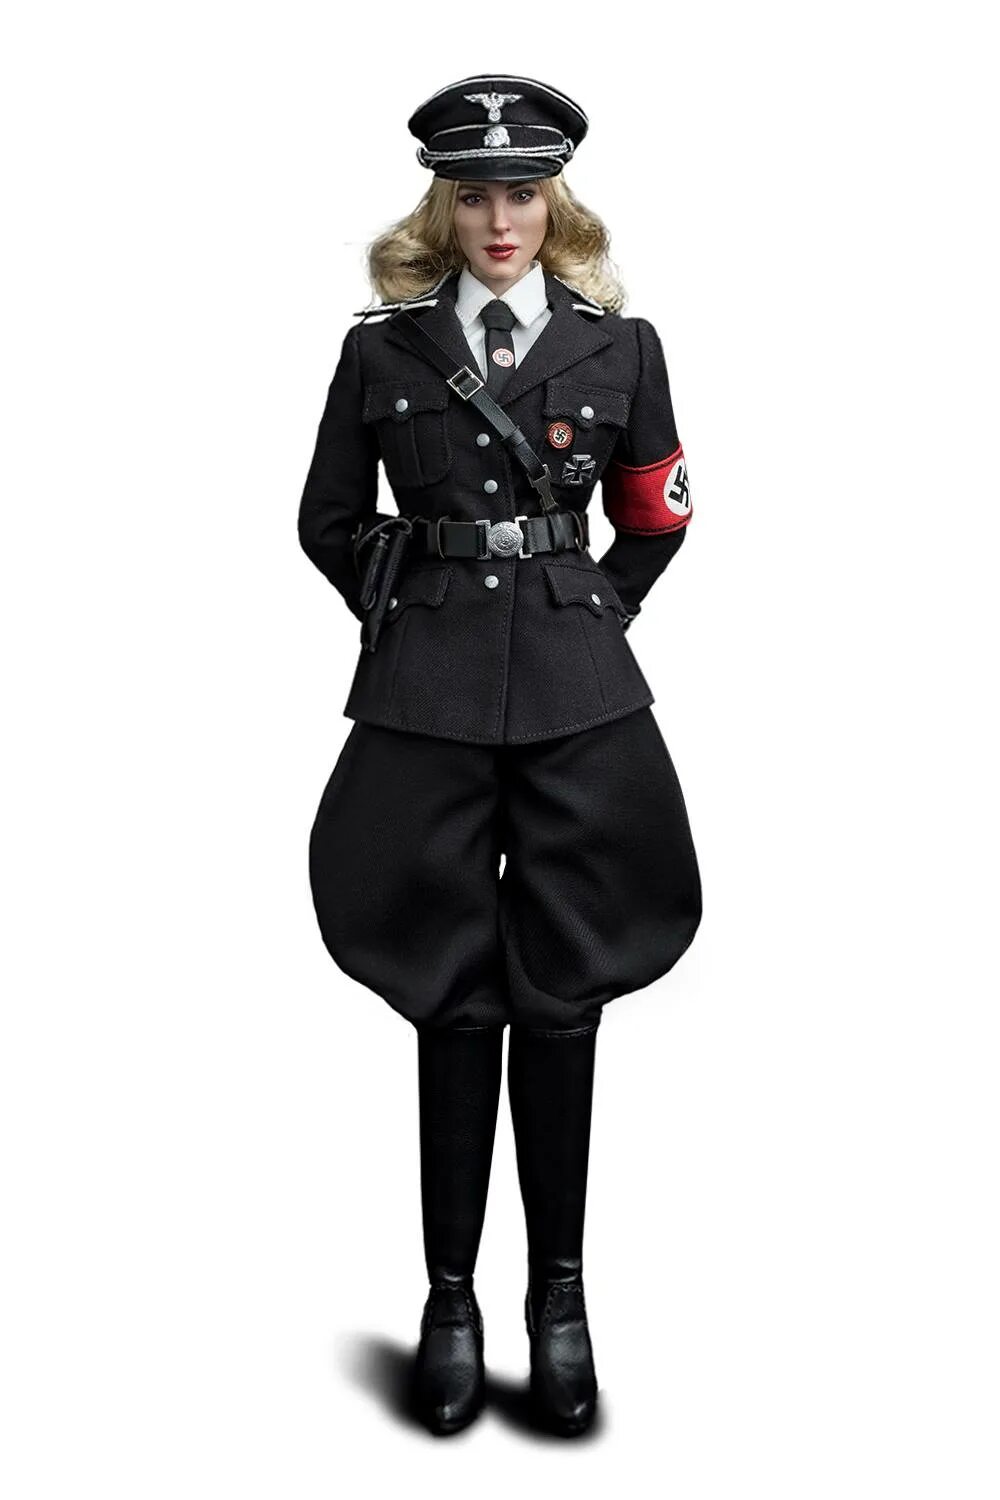 Женская форма СС Хьюго босс. Женщина в форме СС. Костюм гестапо женский. Женщины в немецкой форме. Женская сс